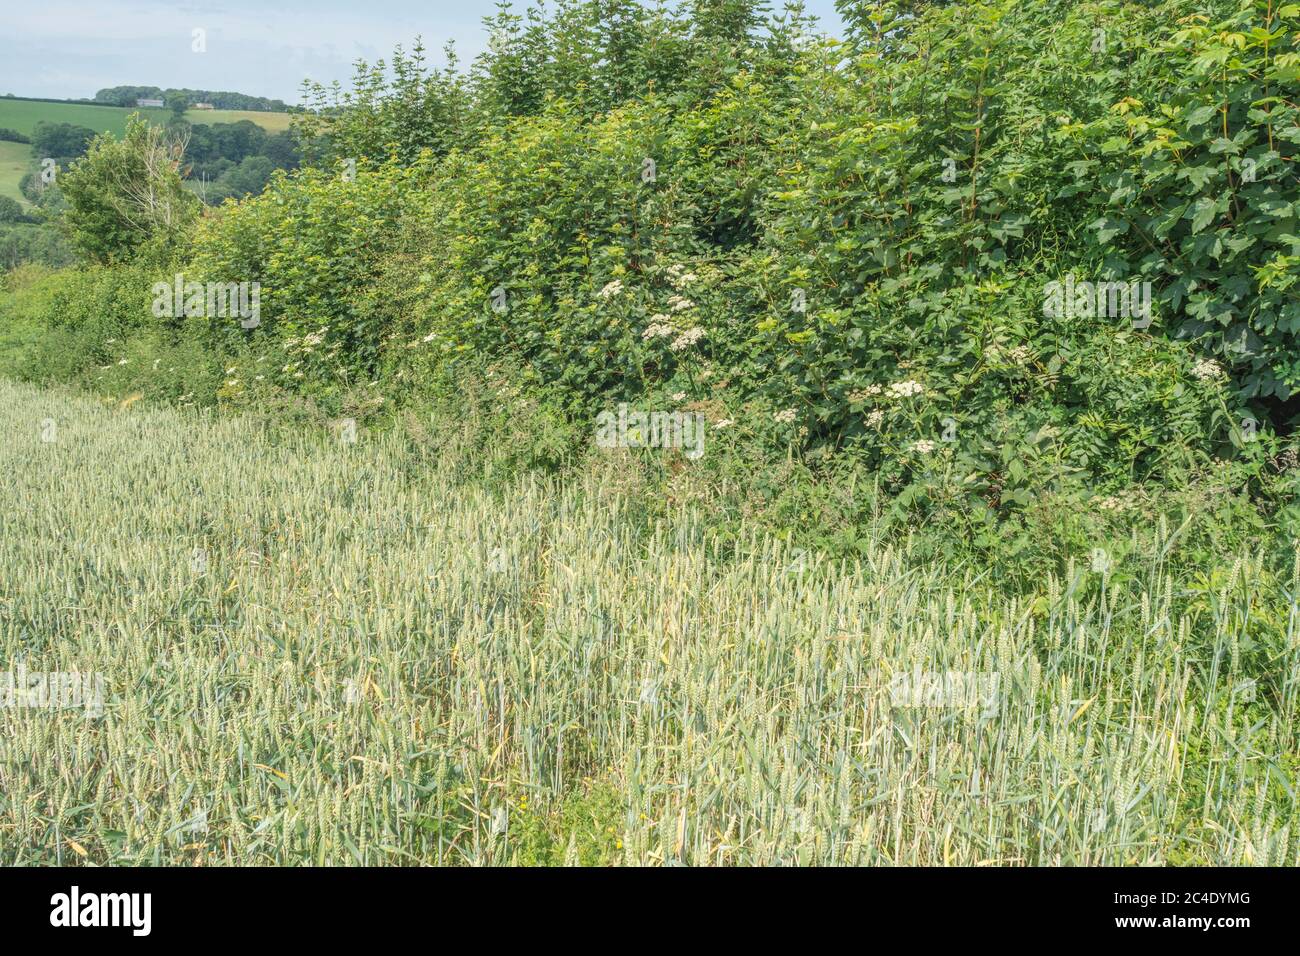 Hedgeline / linea di confine del campo di grano verde del Regno Unito. Metafora agricoltura e agricoltura Regno Unito, frontiere, hedgeline, approvvigionamento alimentare del Regno Unito, raccolto di grano 2020. Foto Stock